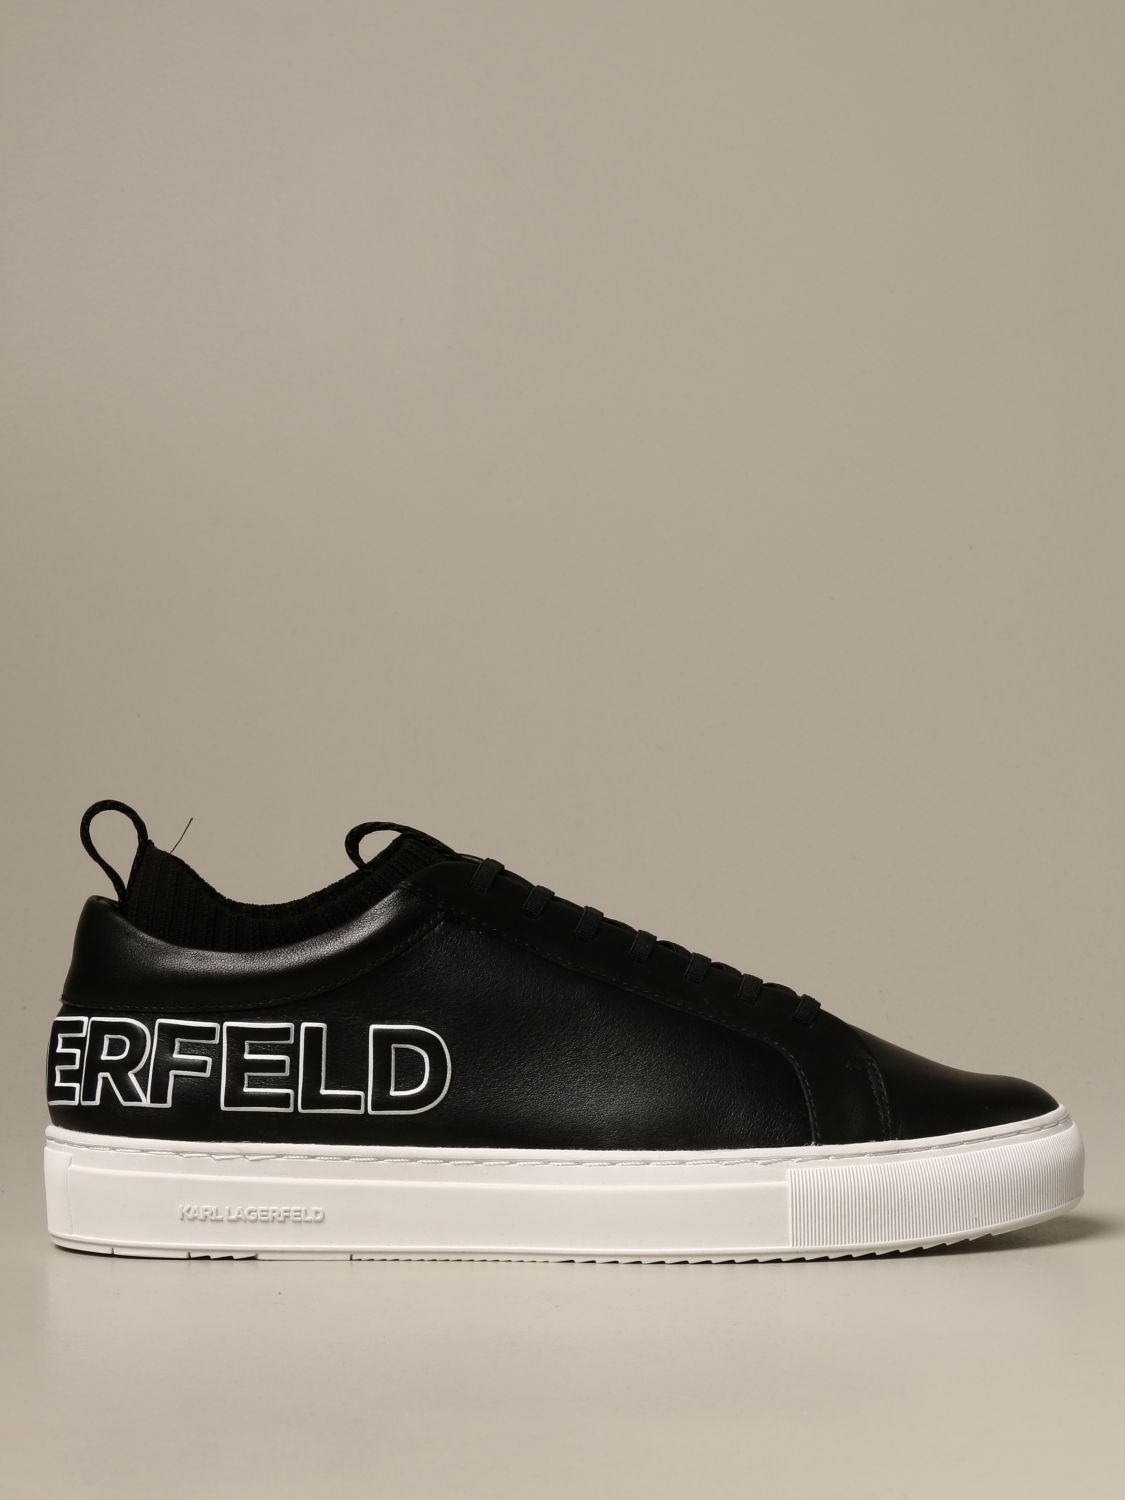 lagerfeld sneakers